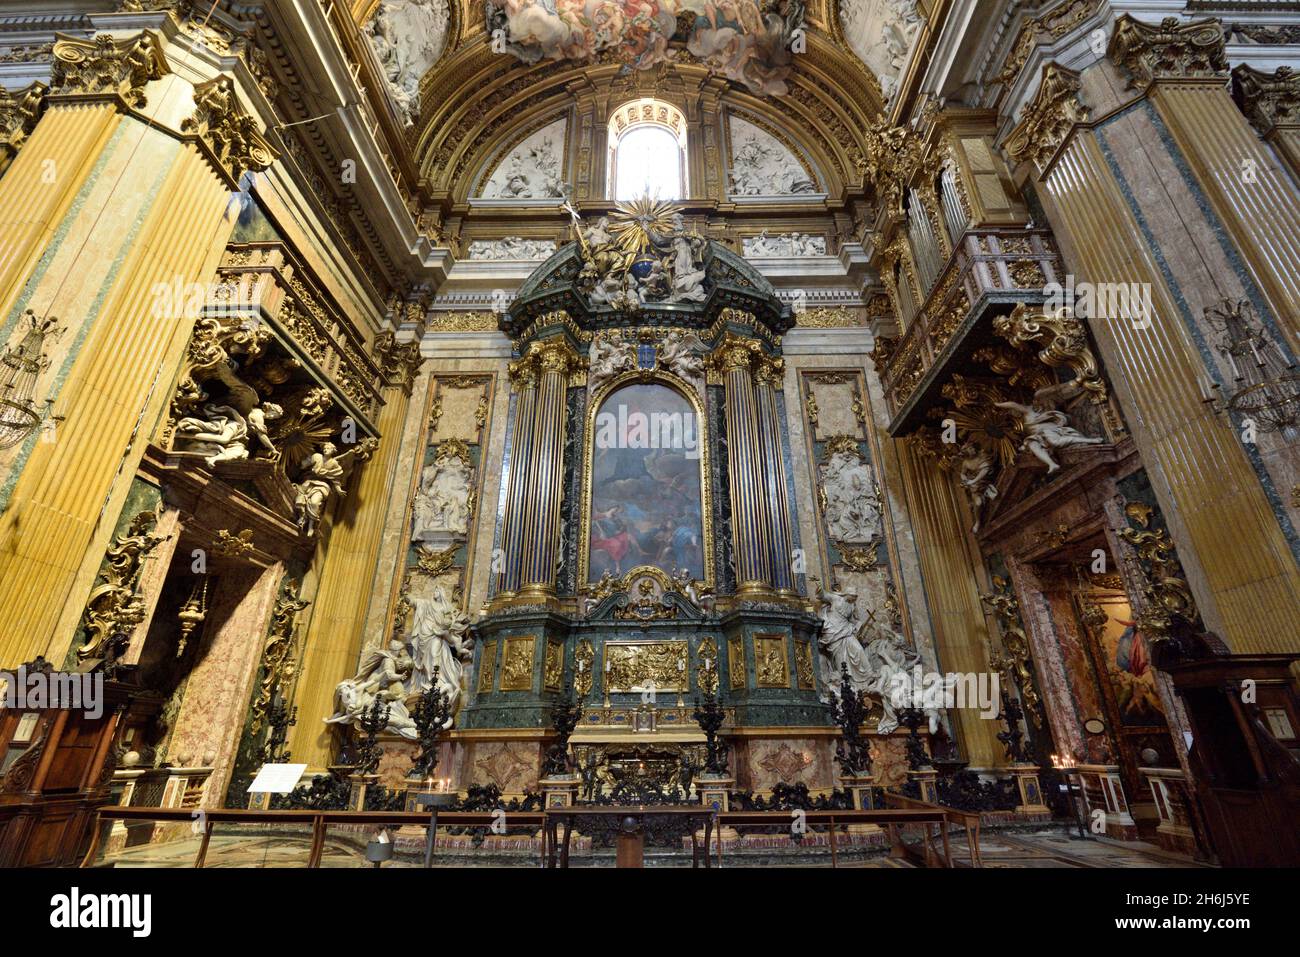 italien, rom, innenraum der chiesa del Gesù (Kirche Jesu), Altar des Heiligen ignatius und barocke Maschine Stockfoto